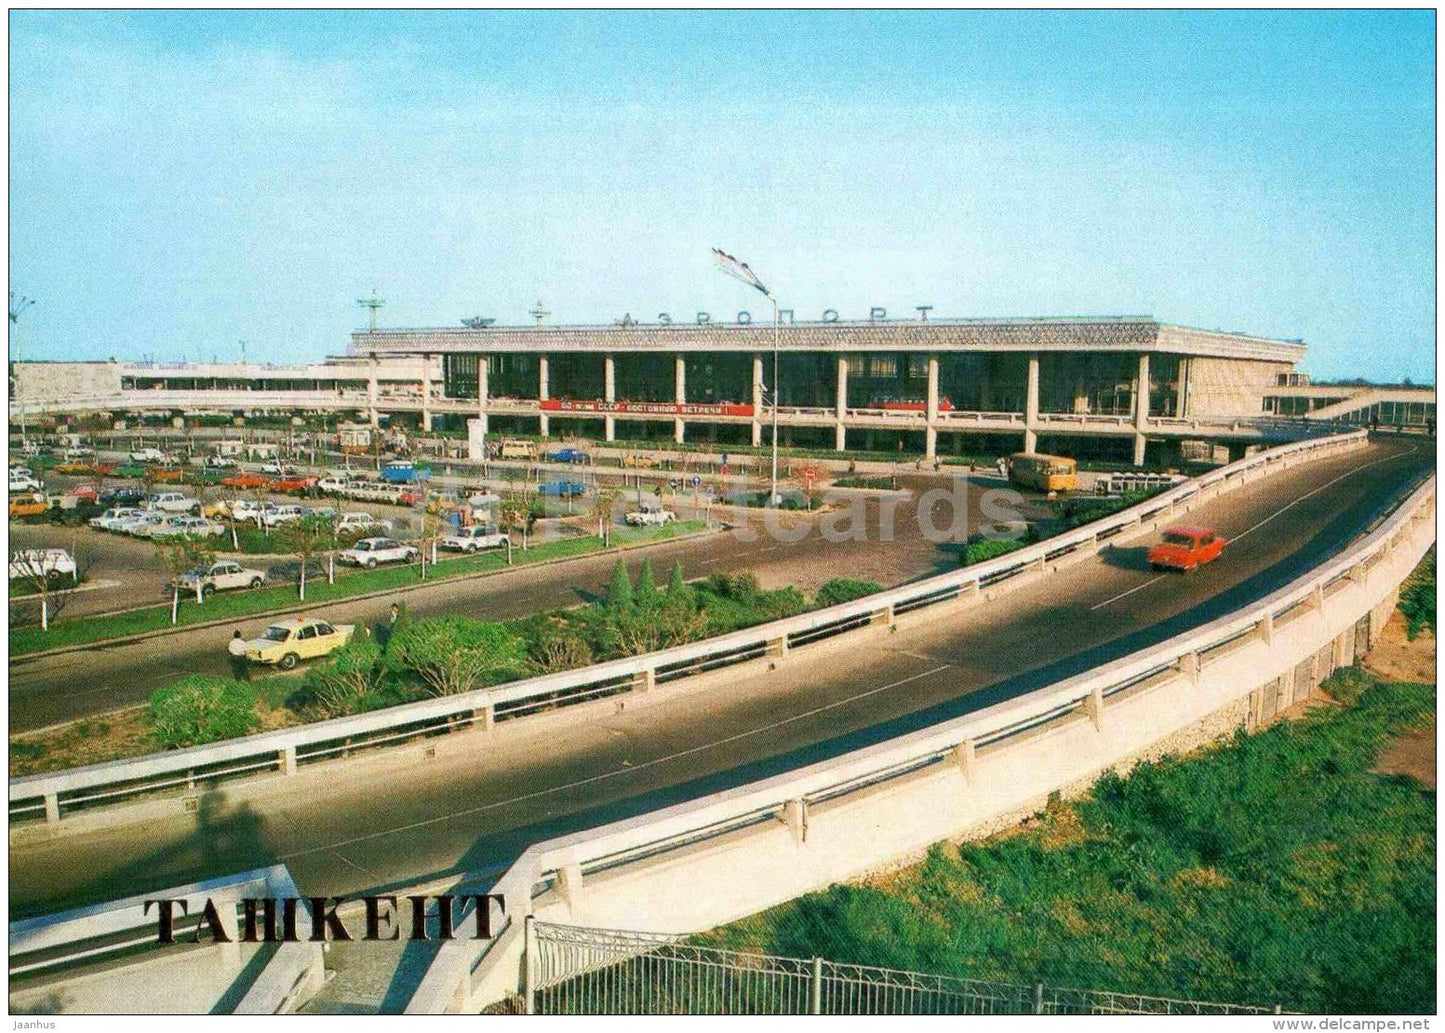 airport - Tashkent - 1986 - Uzbekistan USSR - unused - JH Postcards